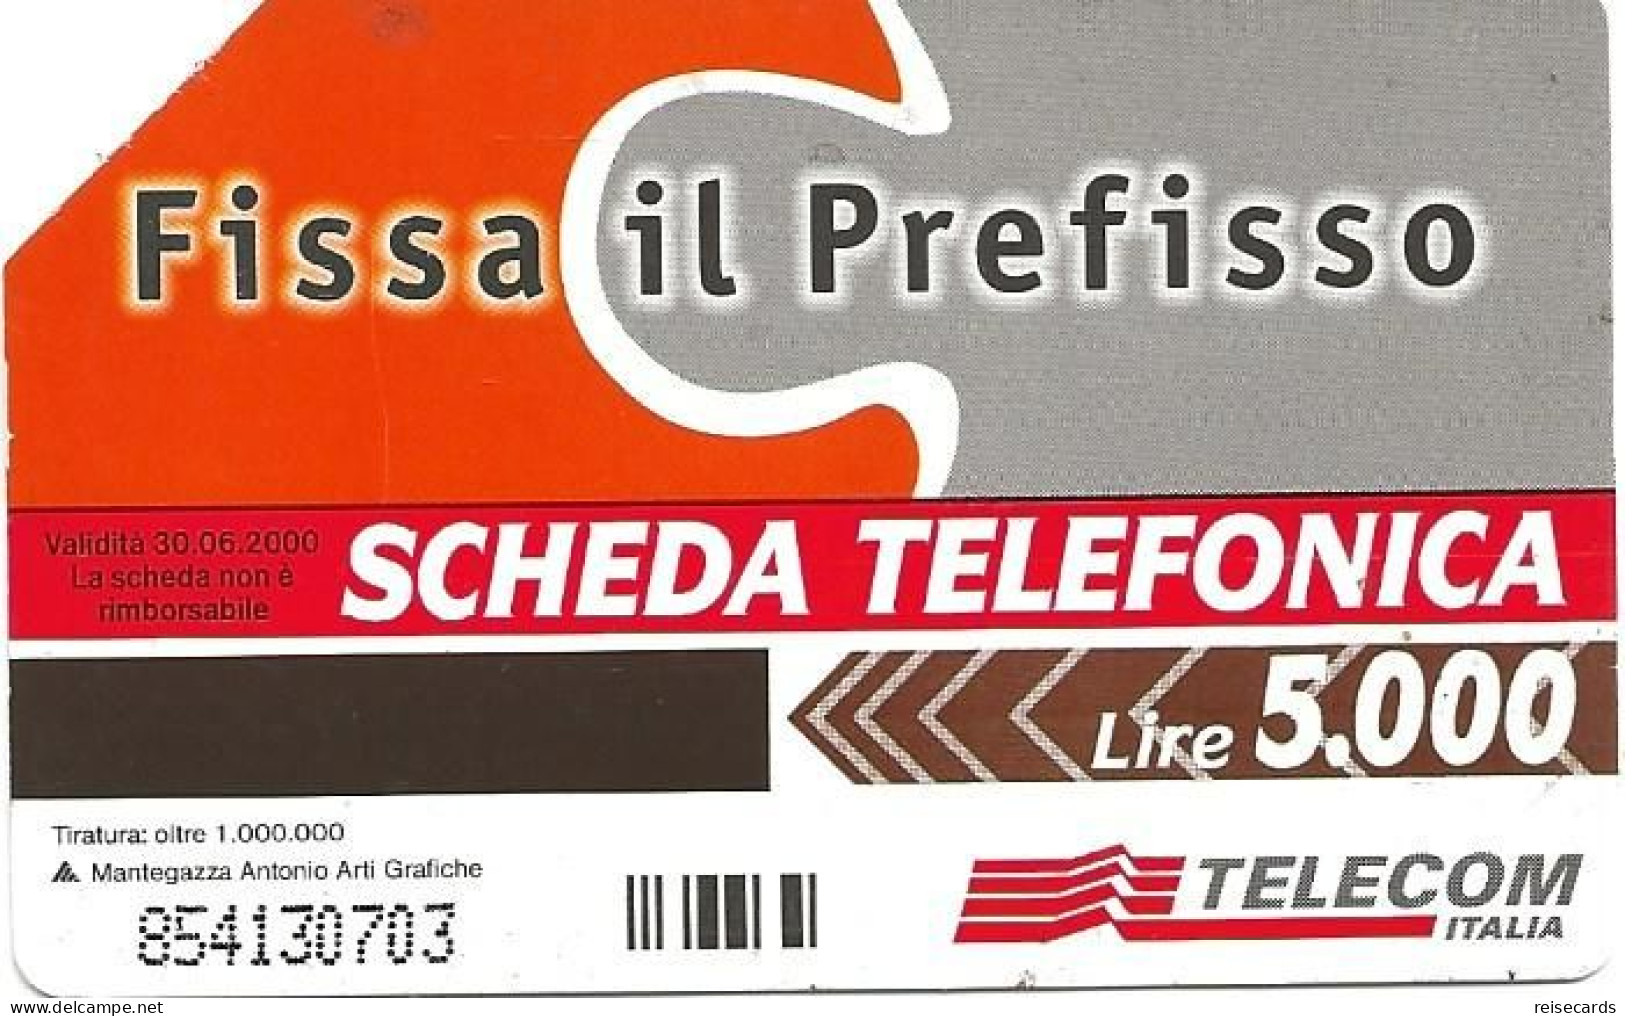 Italy: Telecom Italia - Fissa Il Prefisso - Openbare Reclame